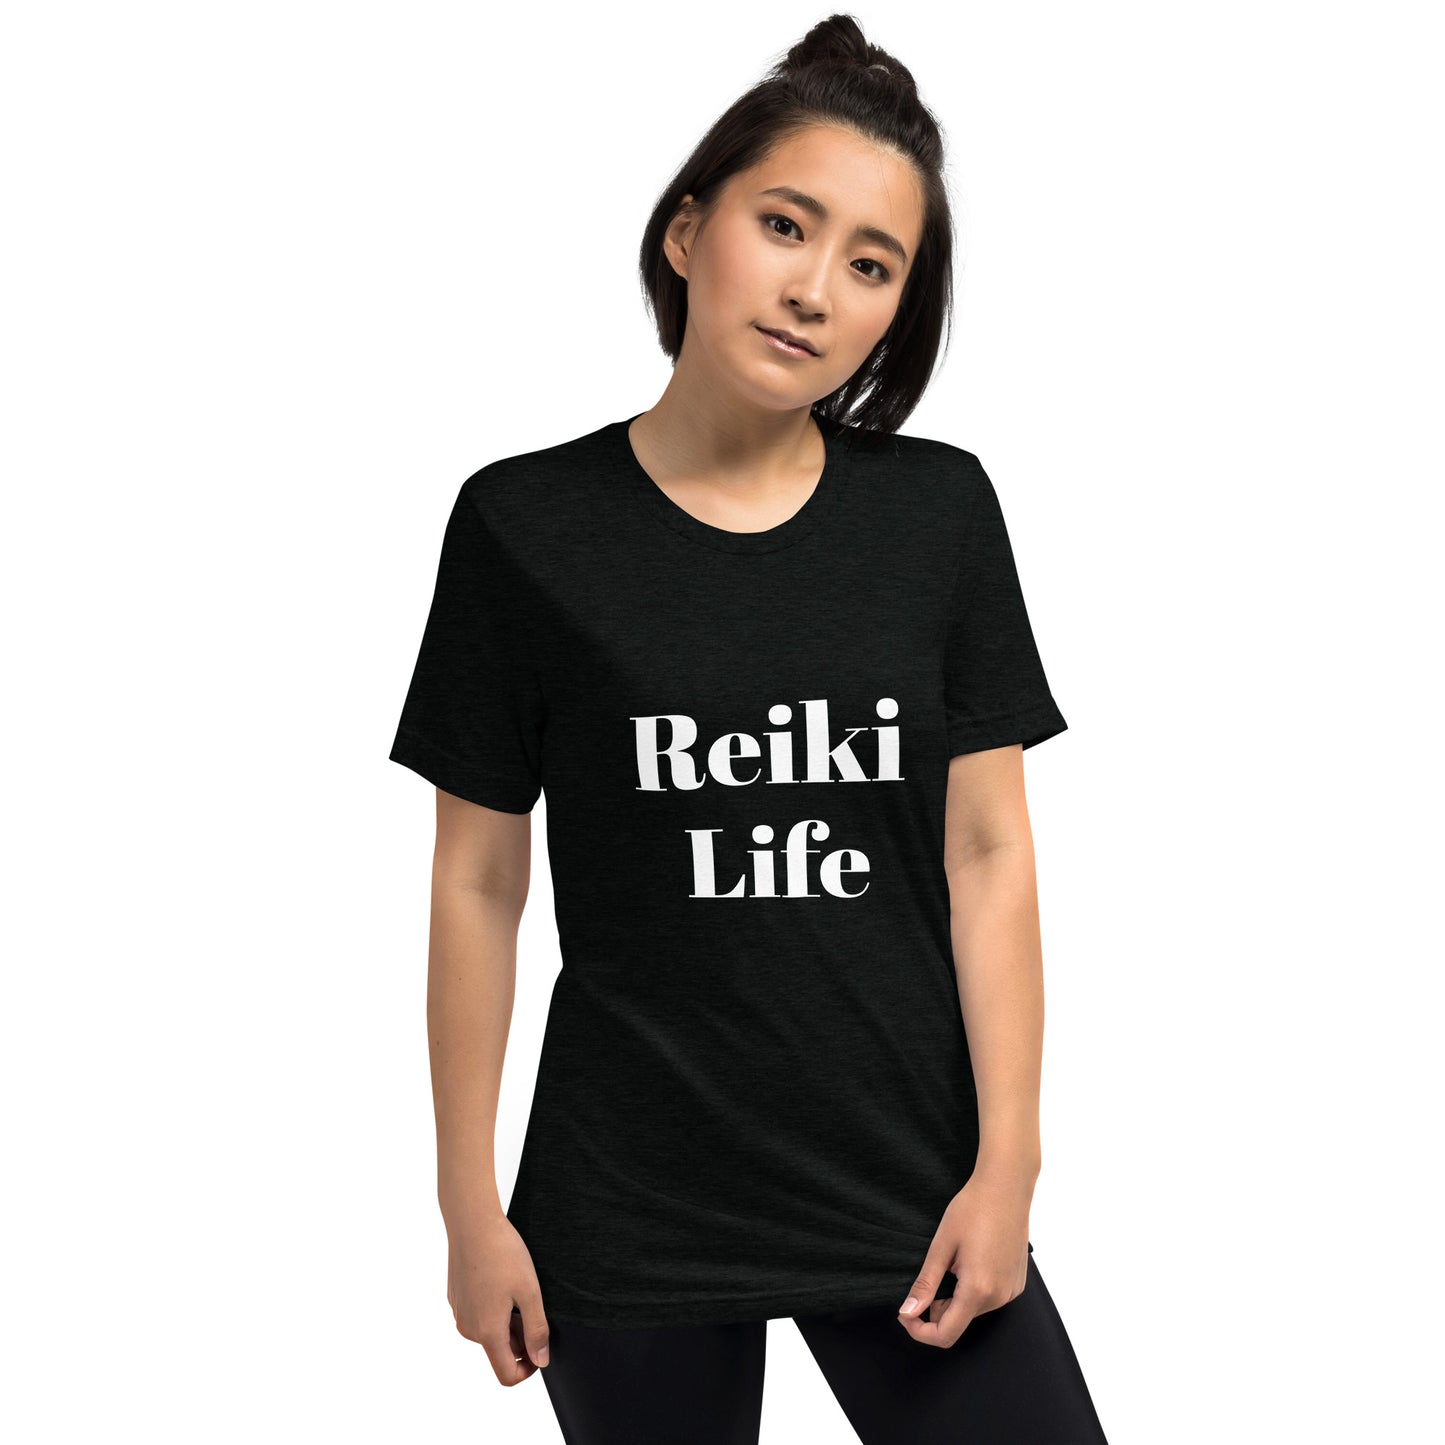 Reiki Life